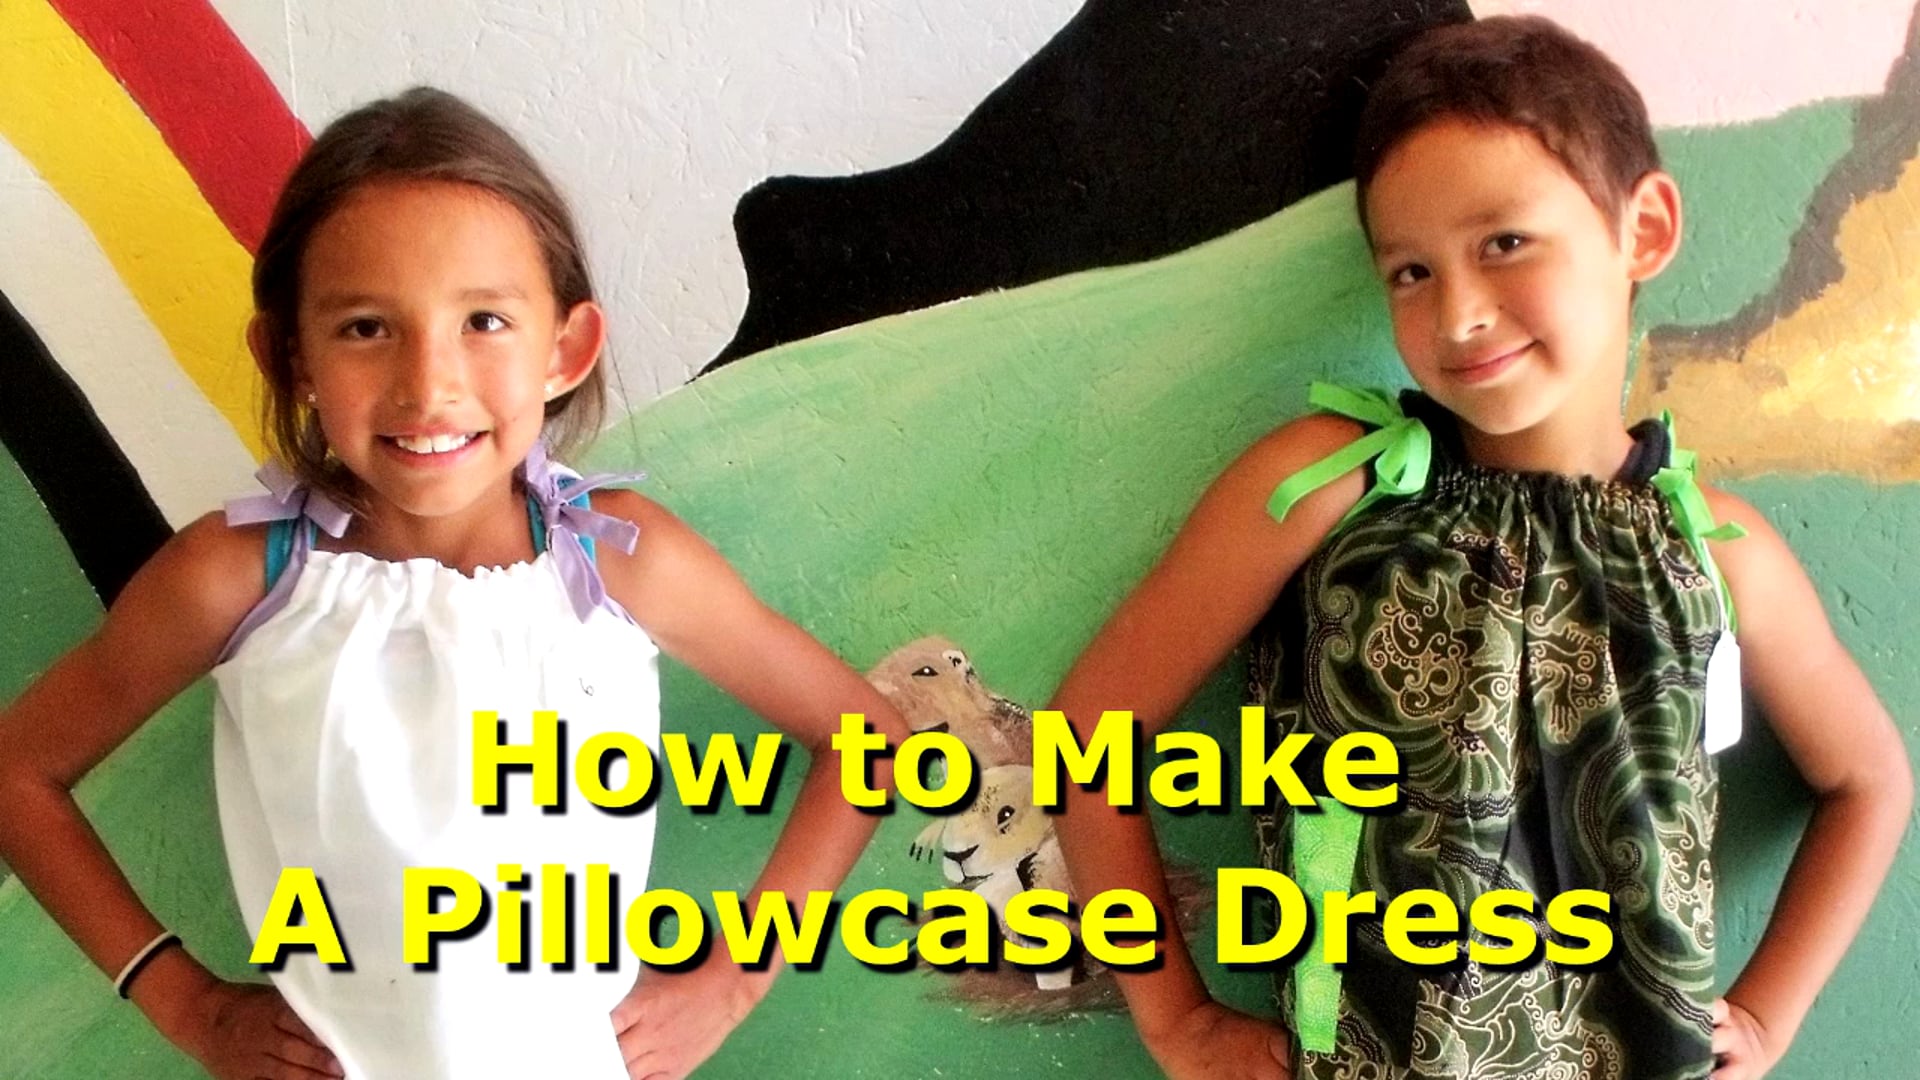 Princess Pillowcase Project Dress Making